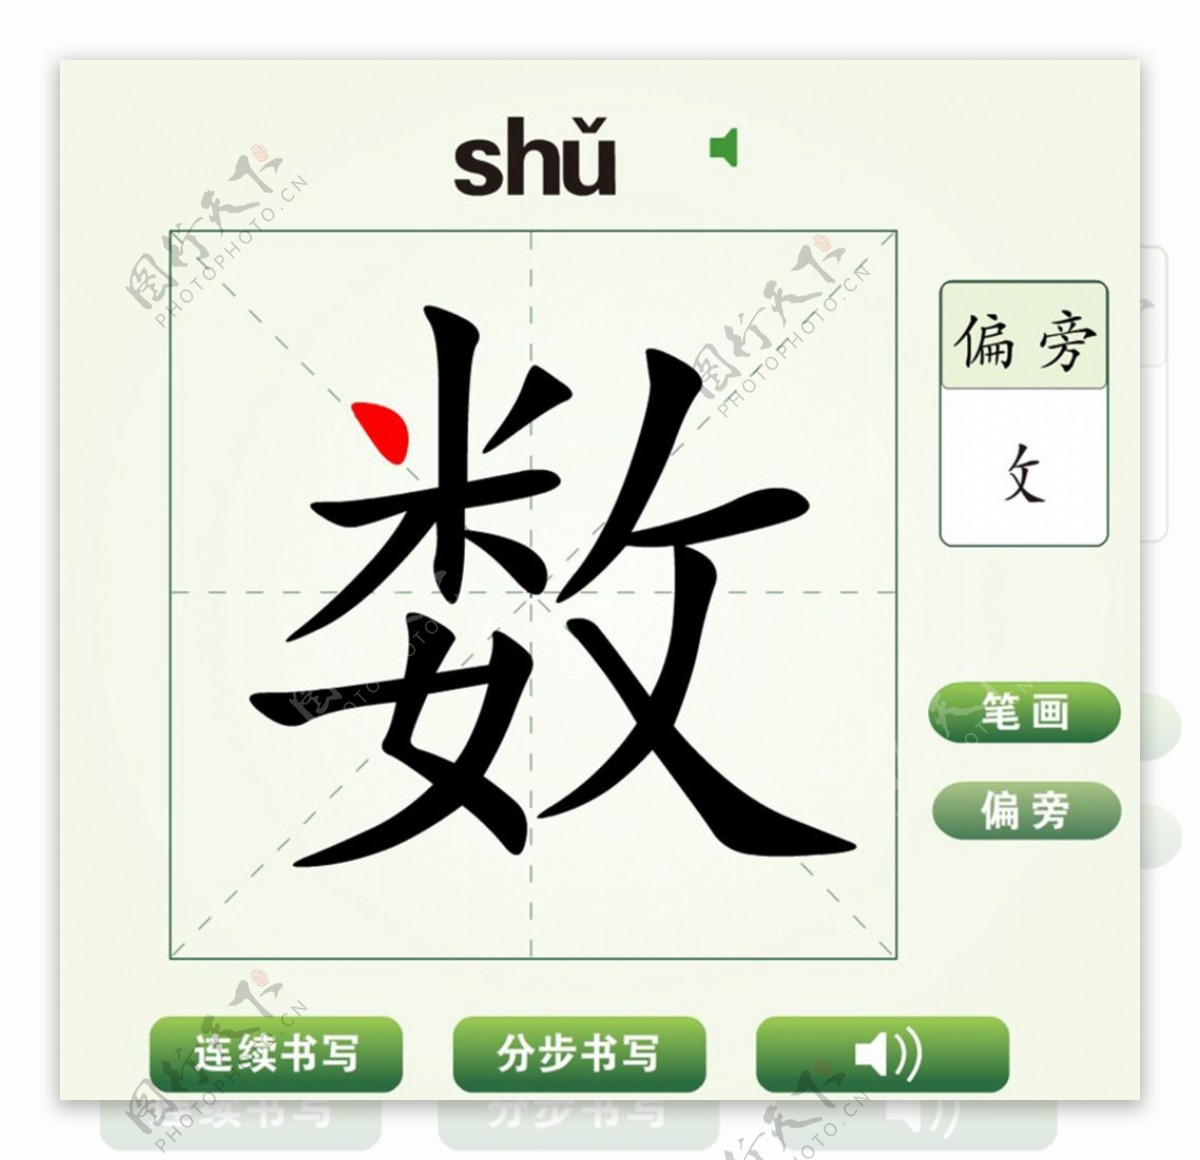 中国汉字数字笔画教学动画视频